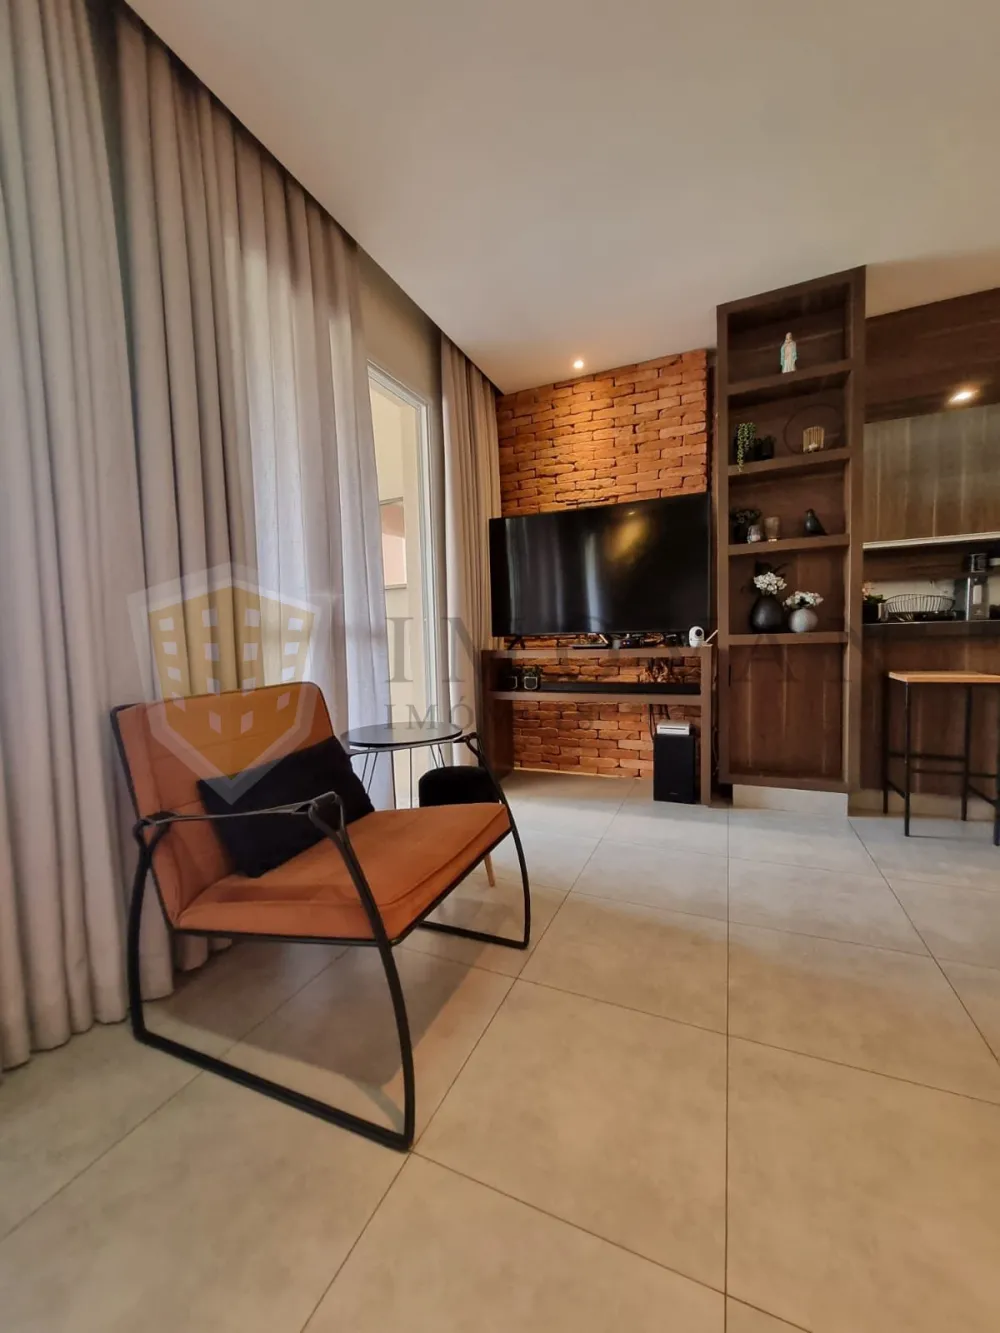 Comprar Apartamento / Padrão em Ribeirão Preto R$ 640.000,00 - Foto 7